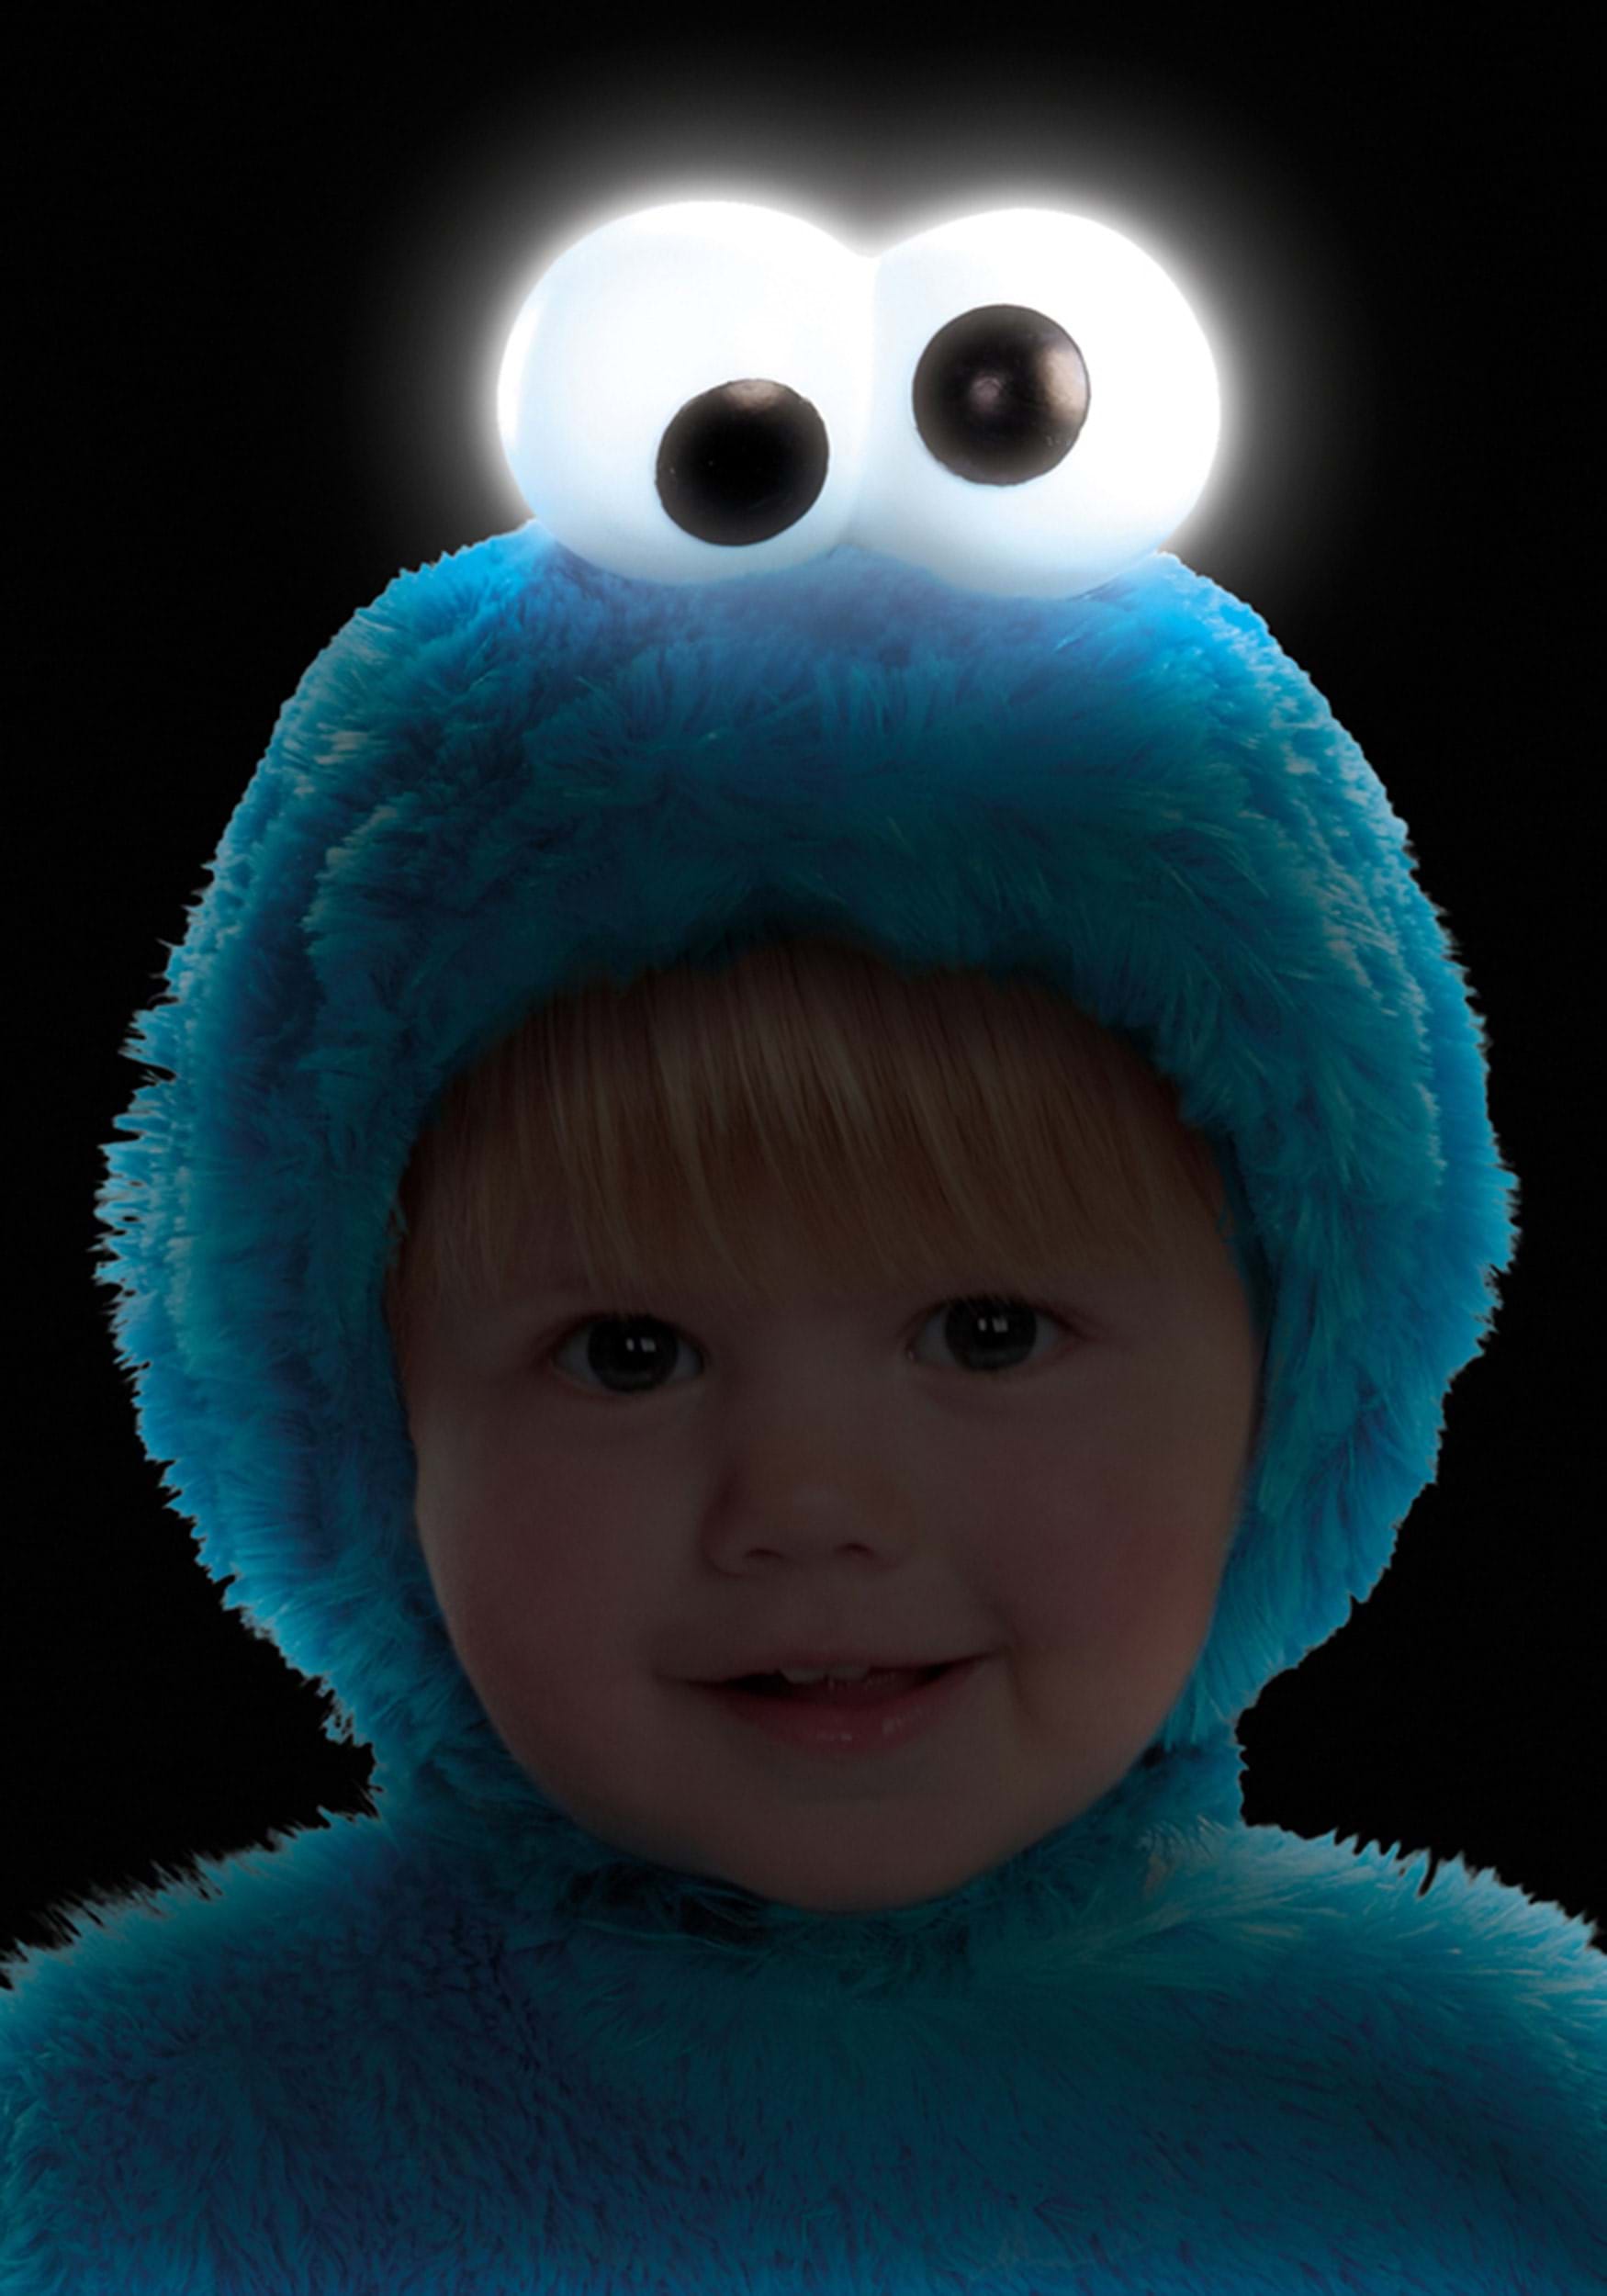 Halloween Cookie Monster cookie jar - Inspire Uplift